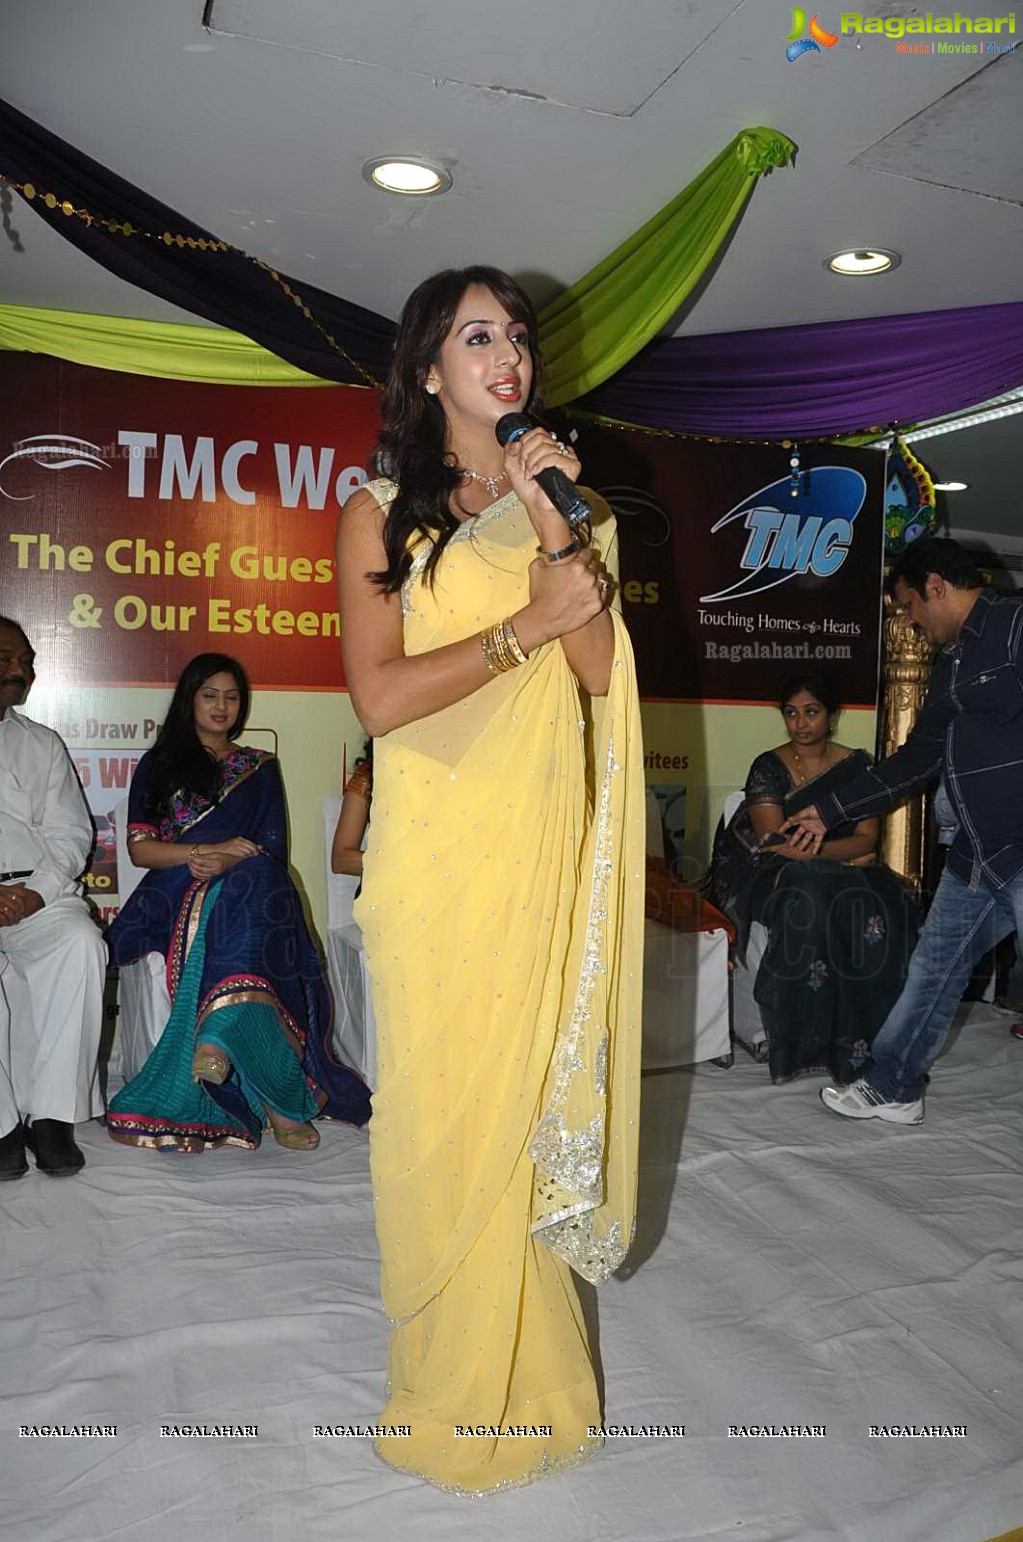 TMC Dhanteras 2012 Special Draw, Hyderabad